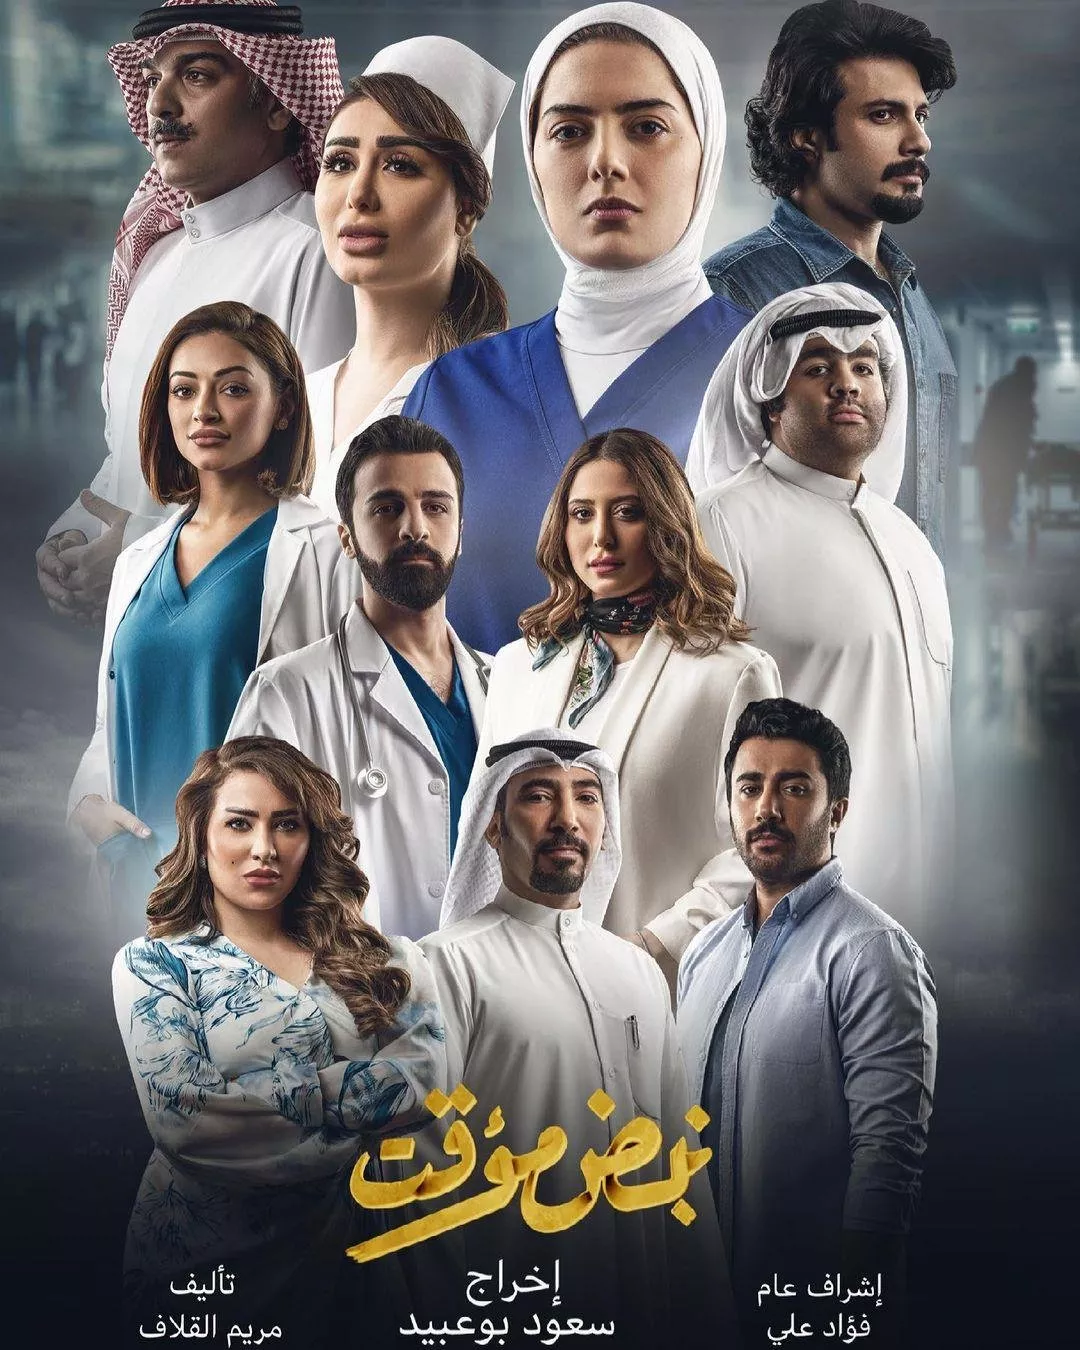 طلة هيا عبدالسلام في مسلسل نبض مؤقت في رمضان 2021